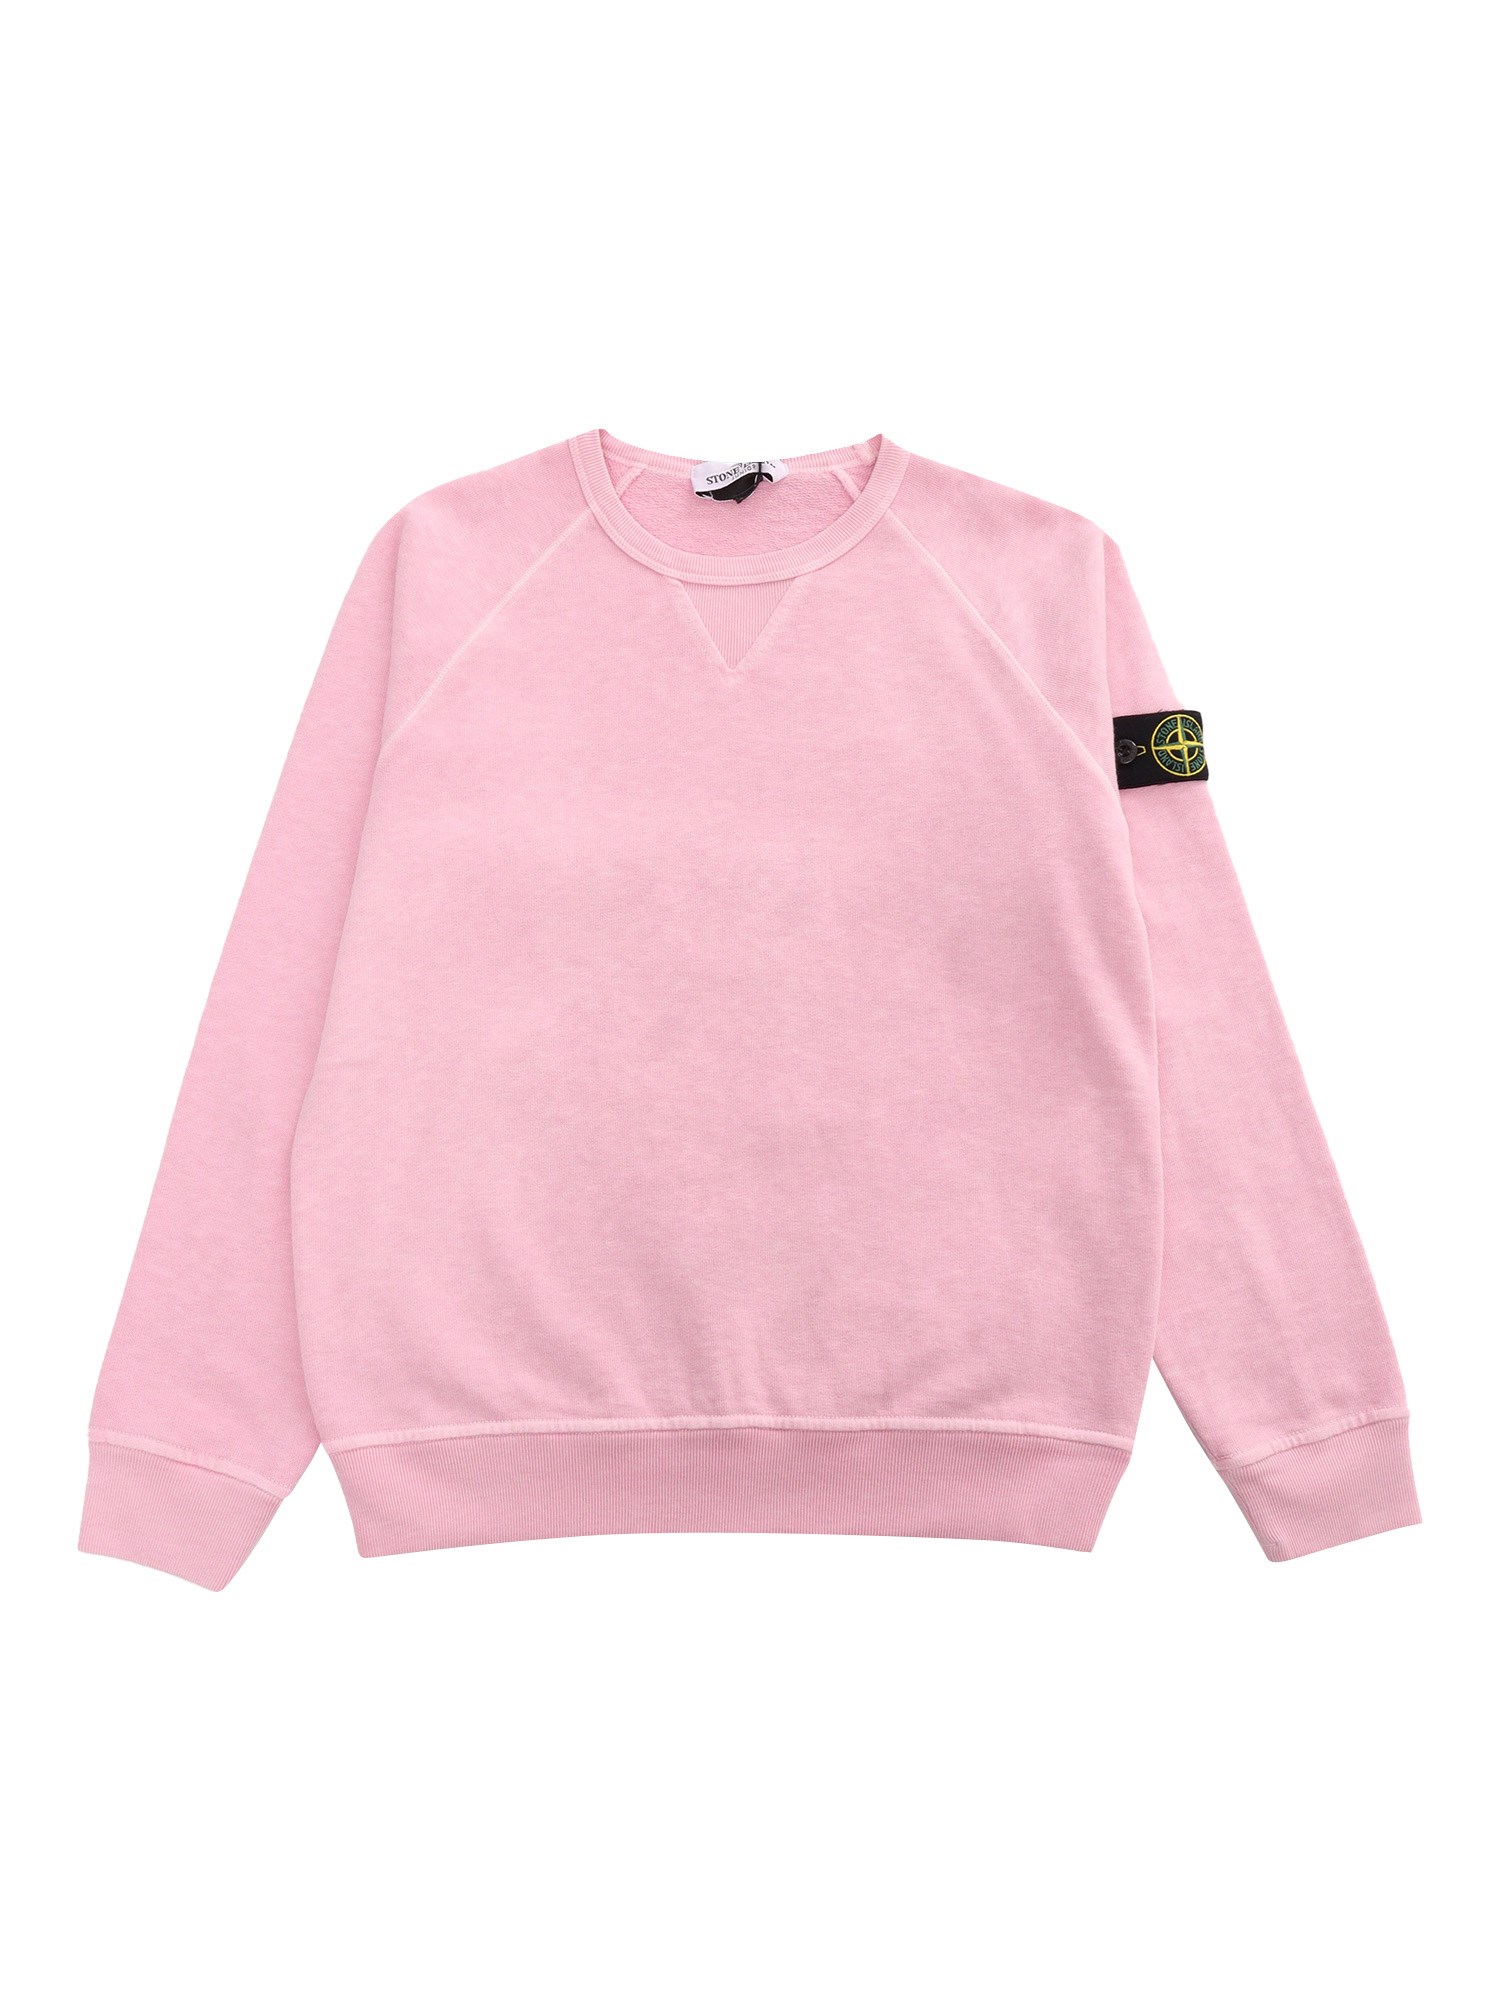 Stone Island Pink Sweatshirt